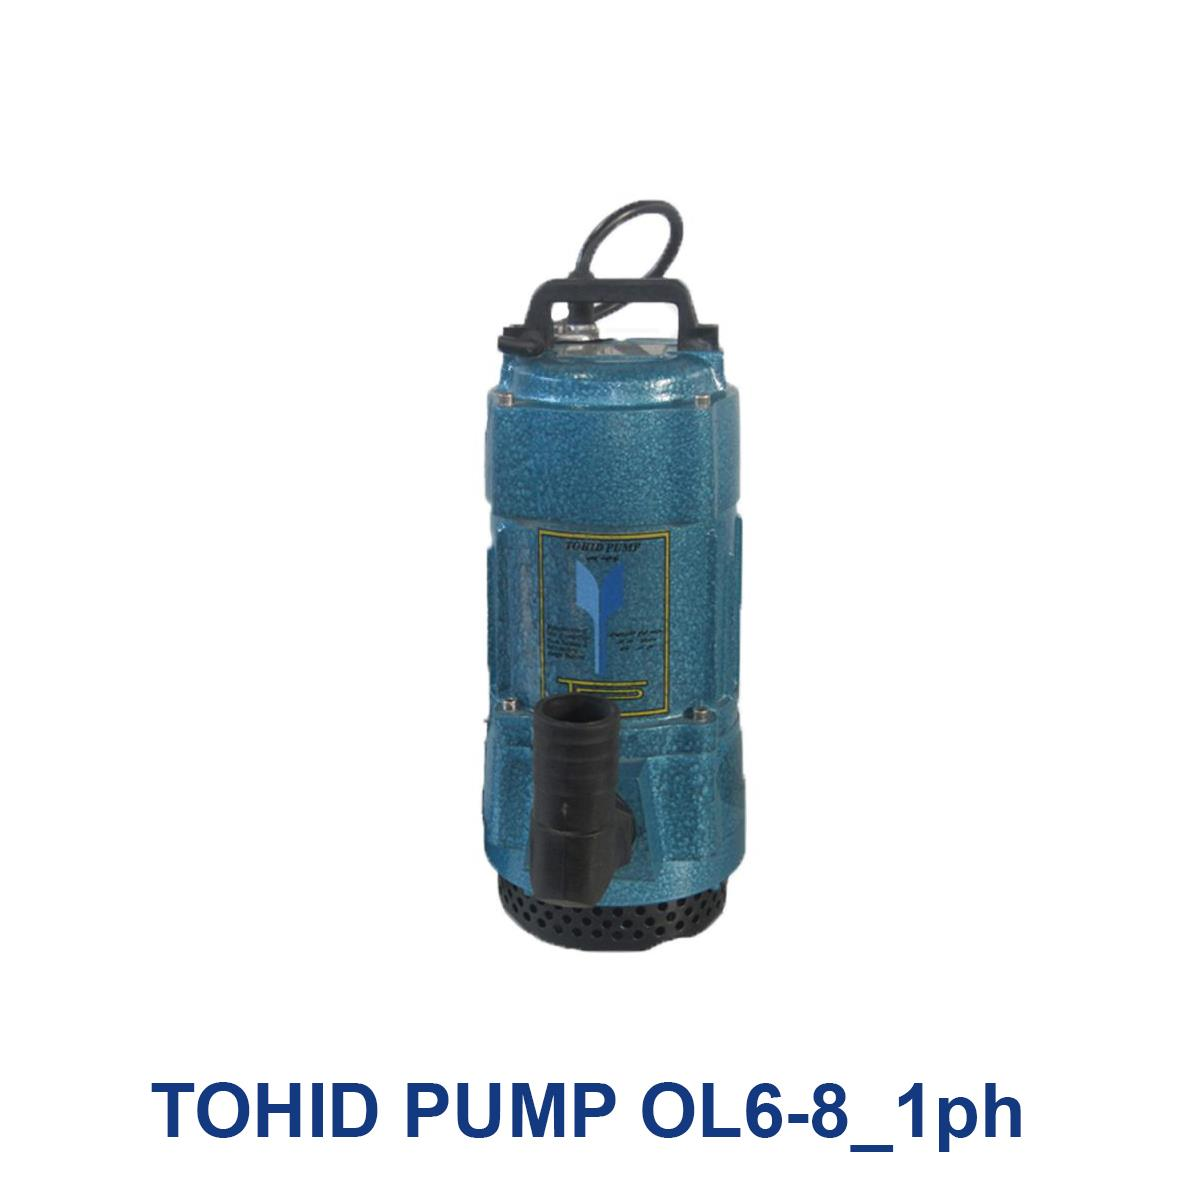 TOHID-PUMP-OL6-8_1ph